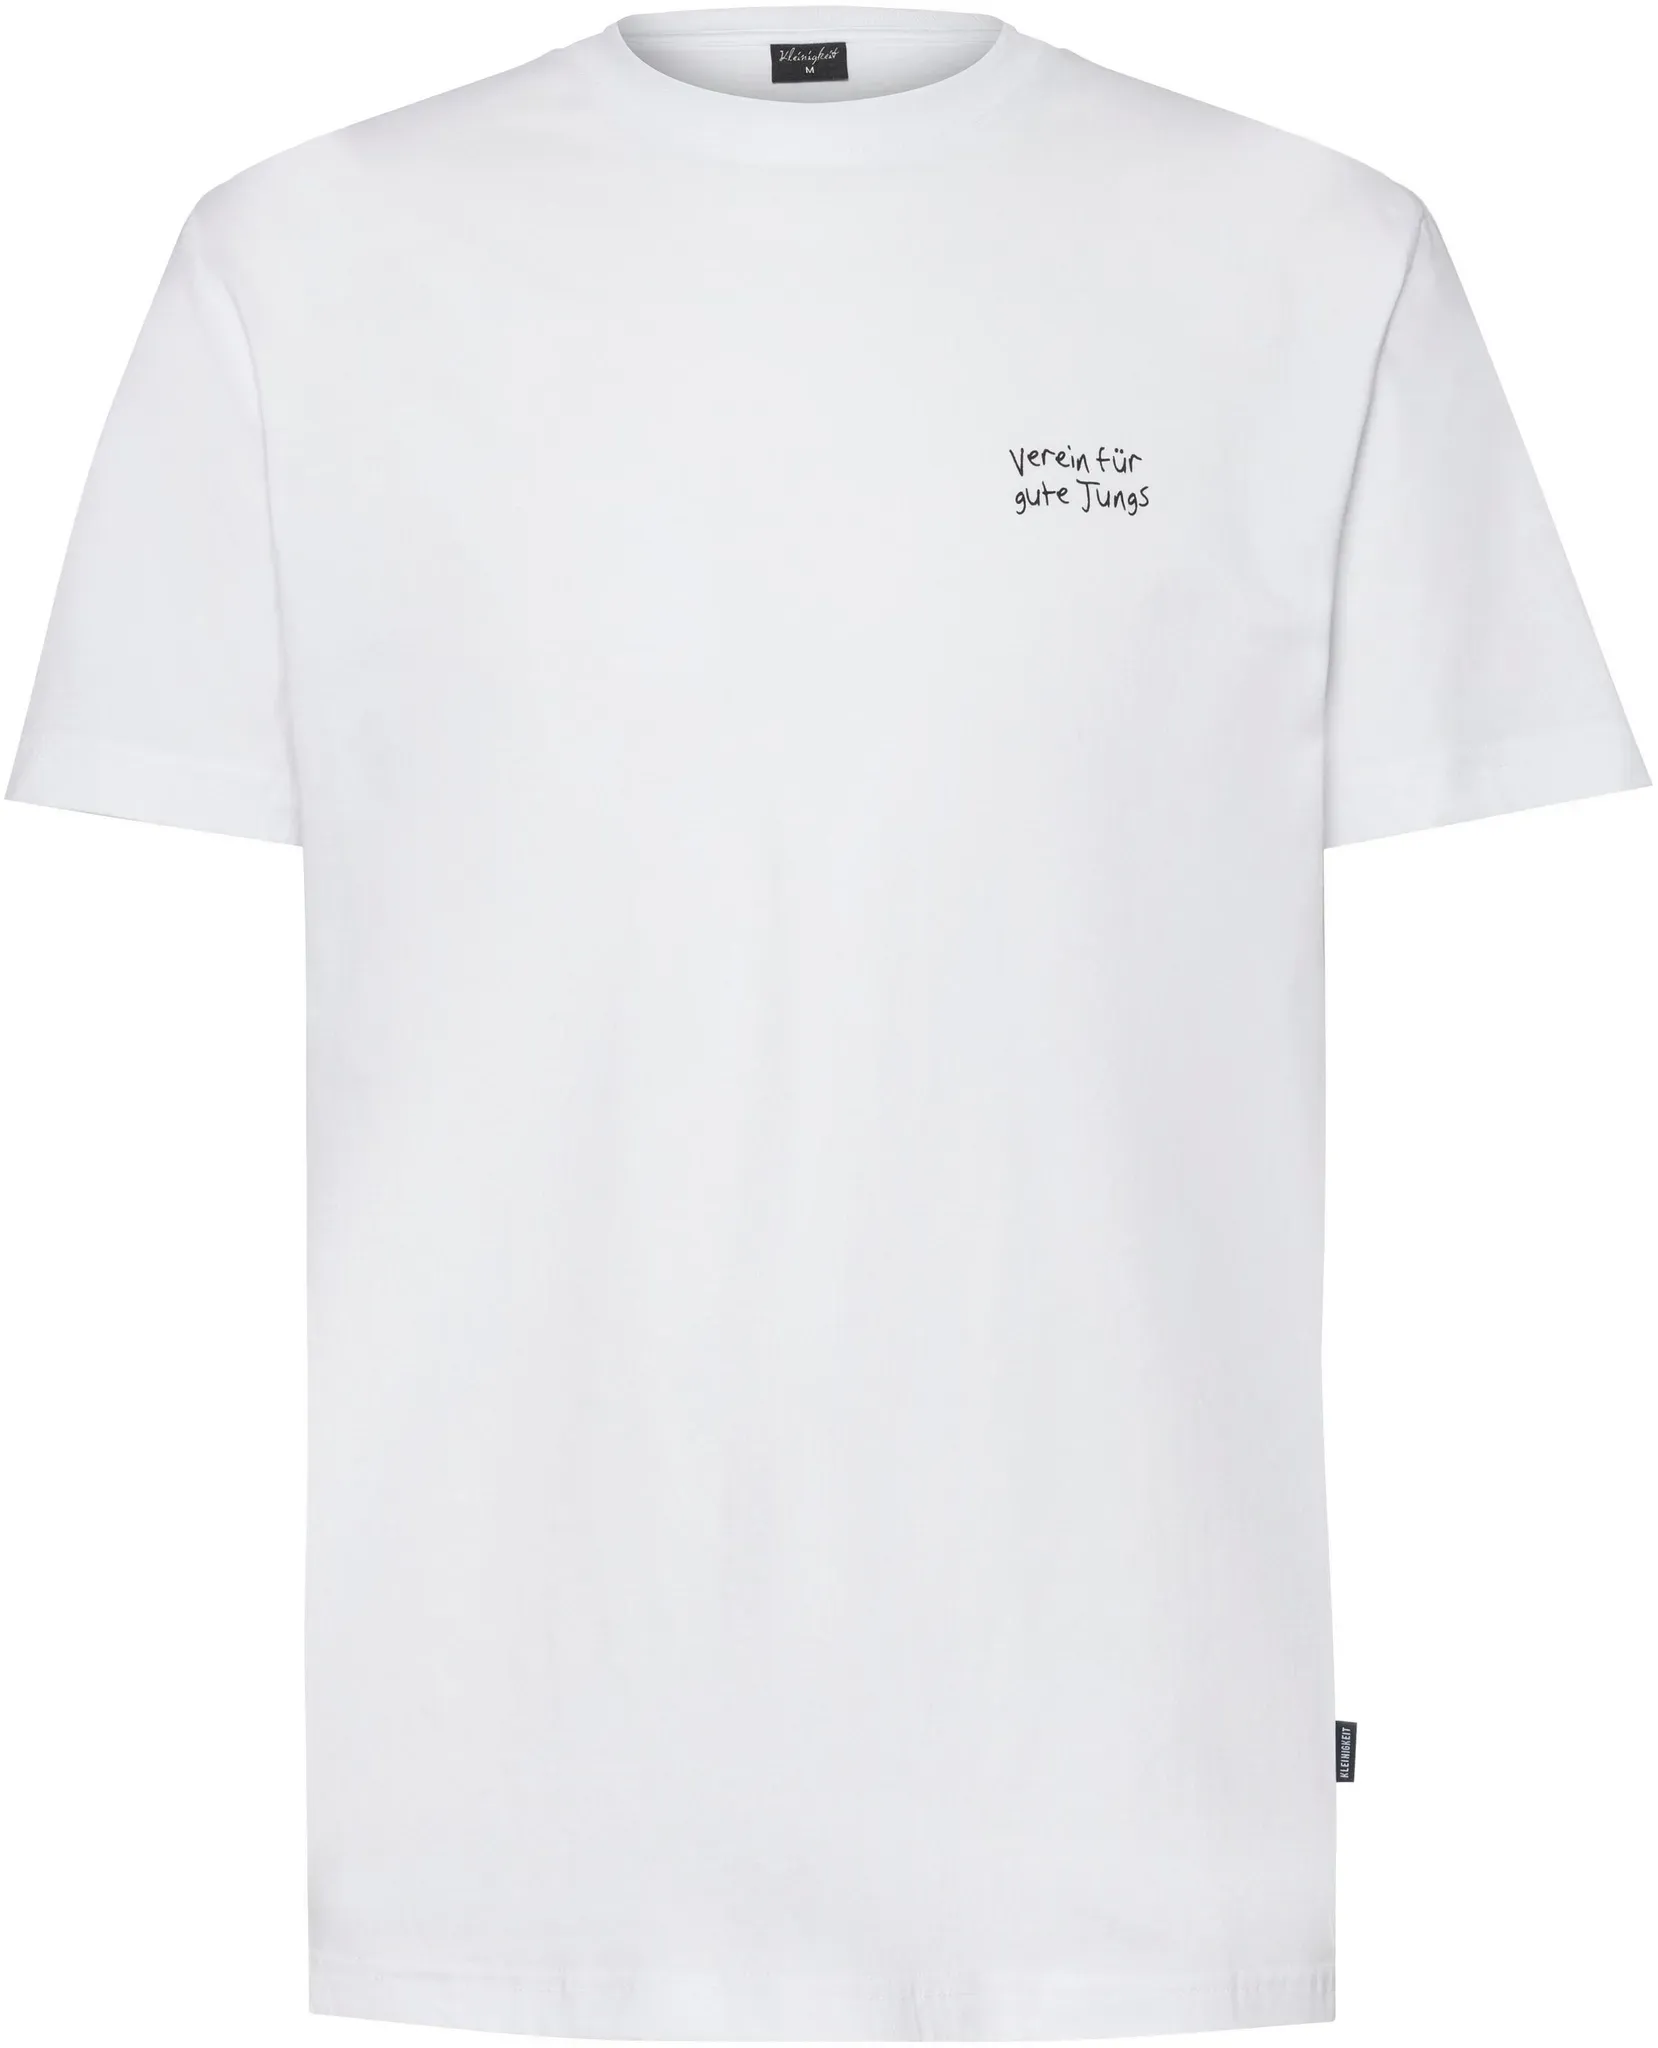 Kleinigkeit Verein für gute Jungs T-Shirt Herren in white, Größe M - weiß